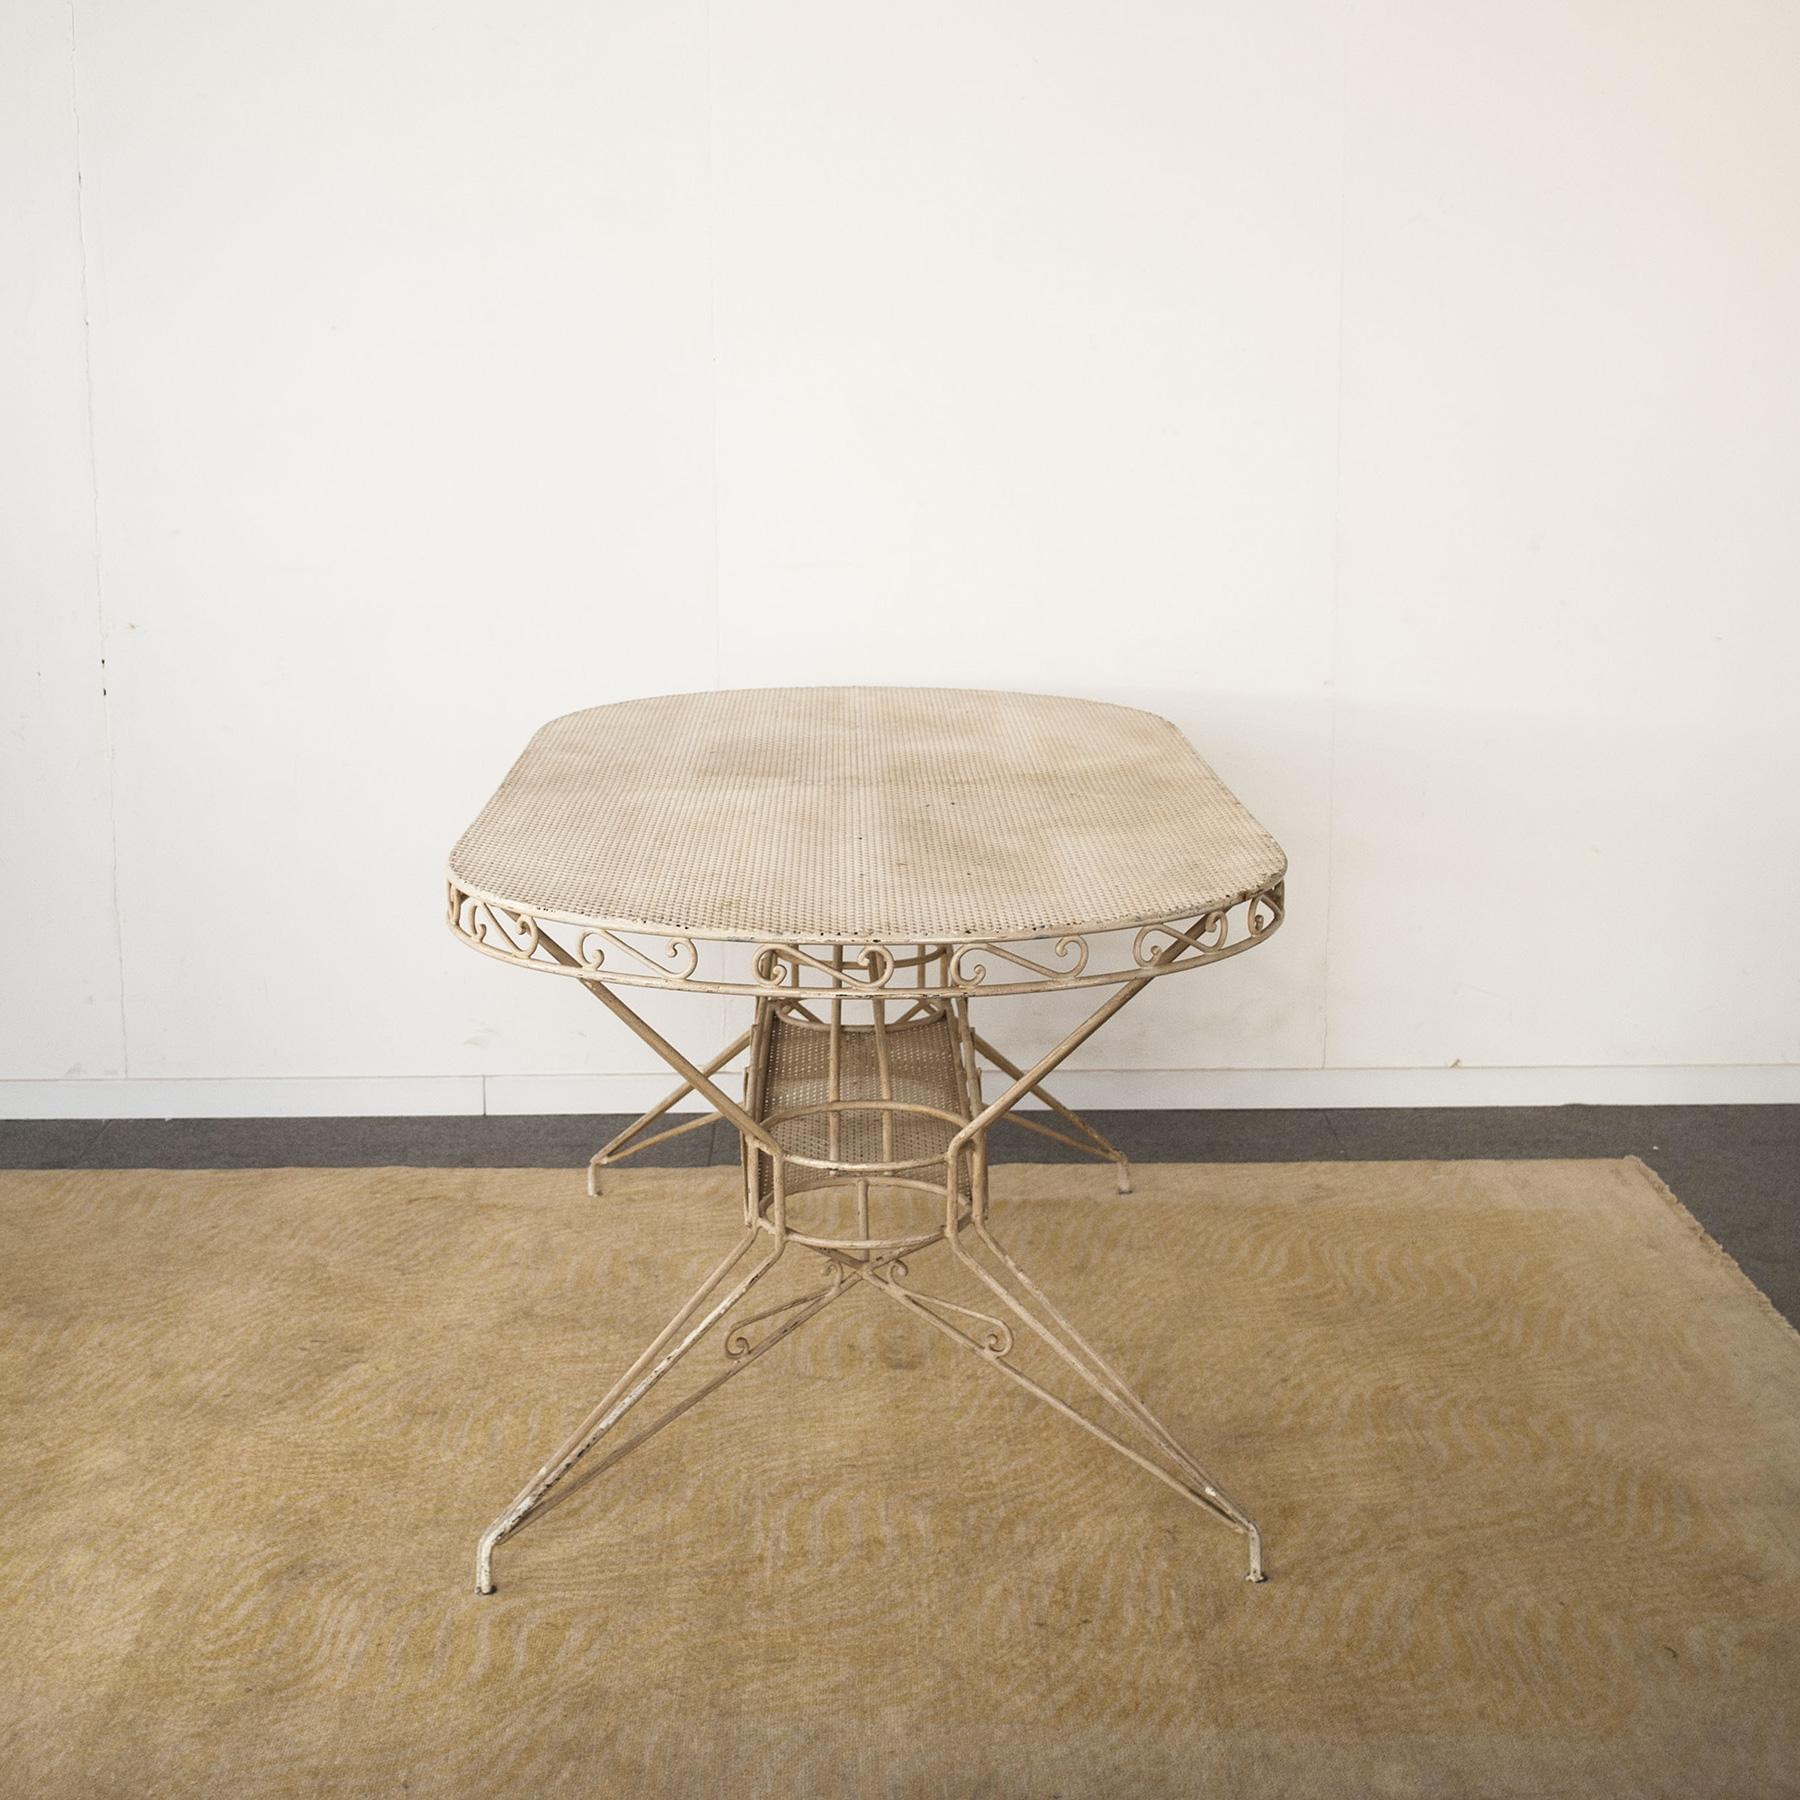 Mid-20th Century Wrought Iron Table from the 1950s Casa E Giardino Gio Ponti Style